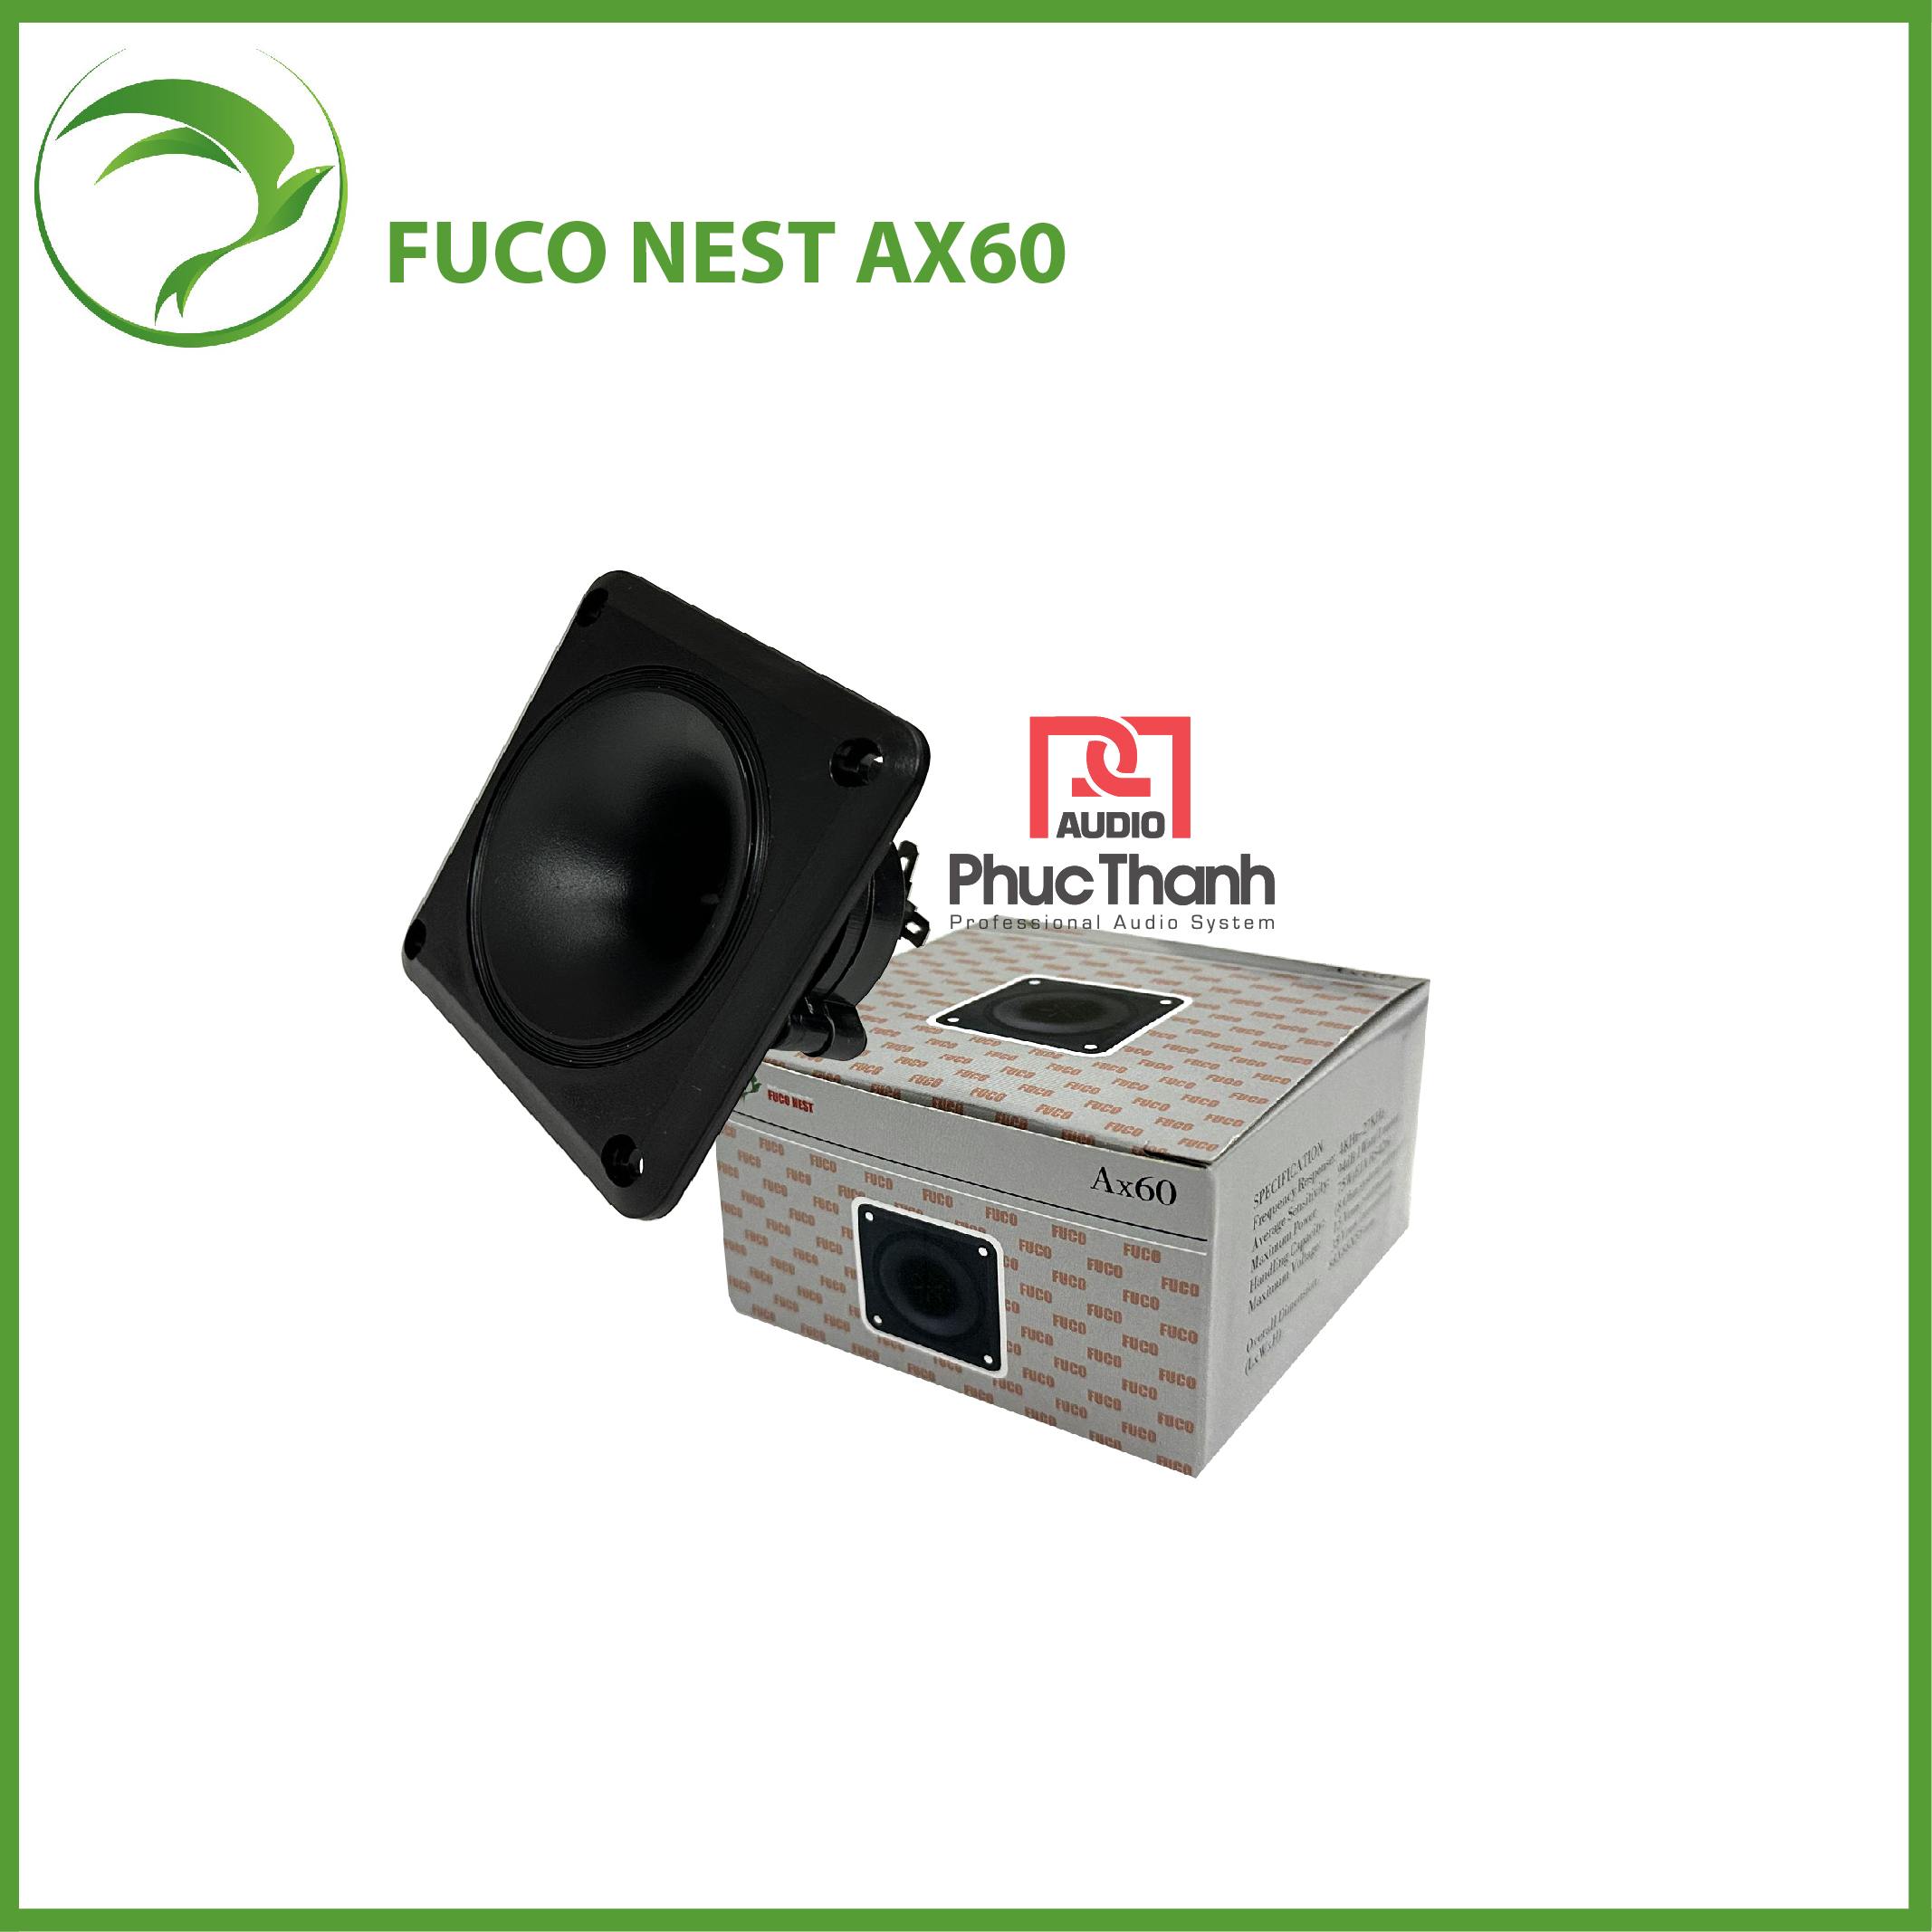 Loa Fuco Nest Ax60